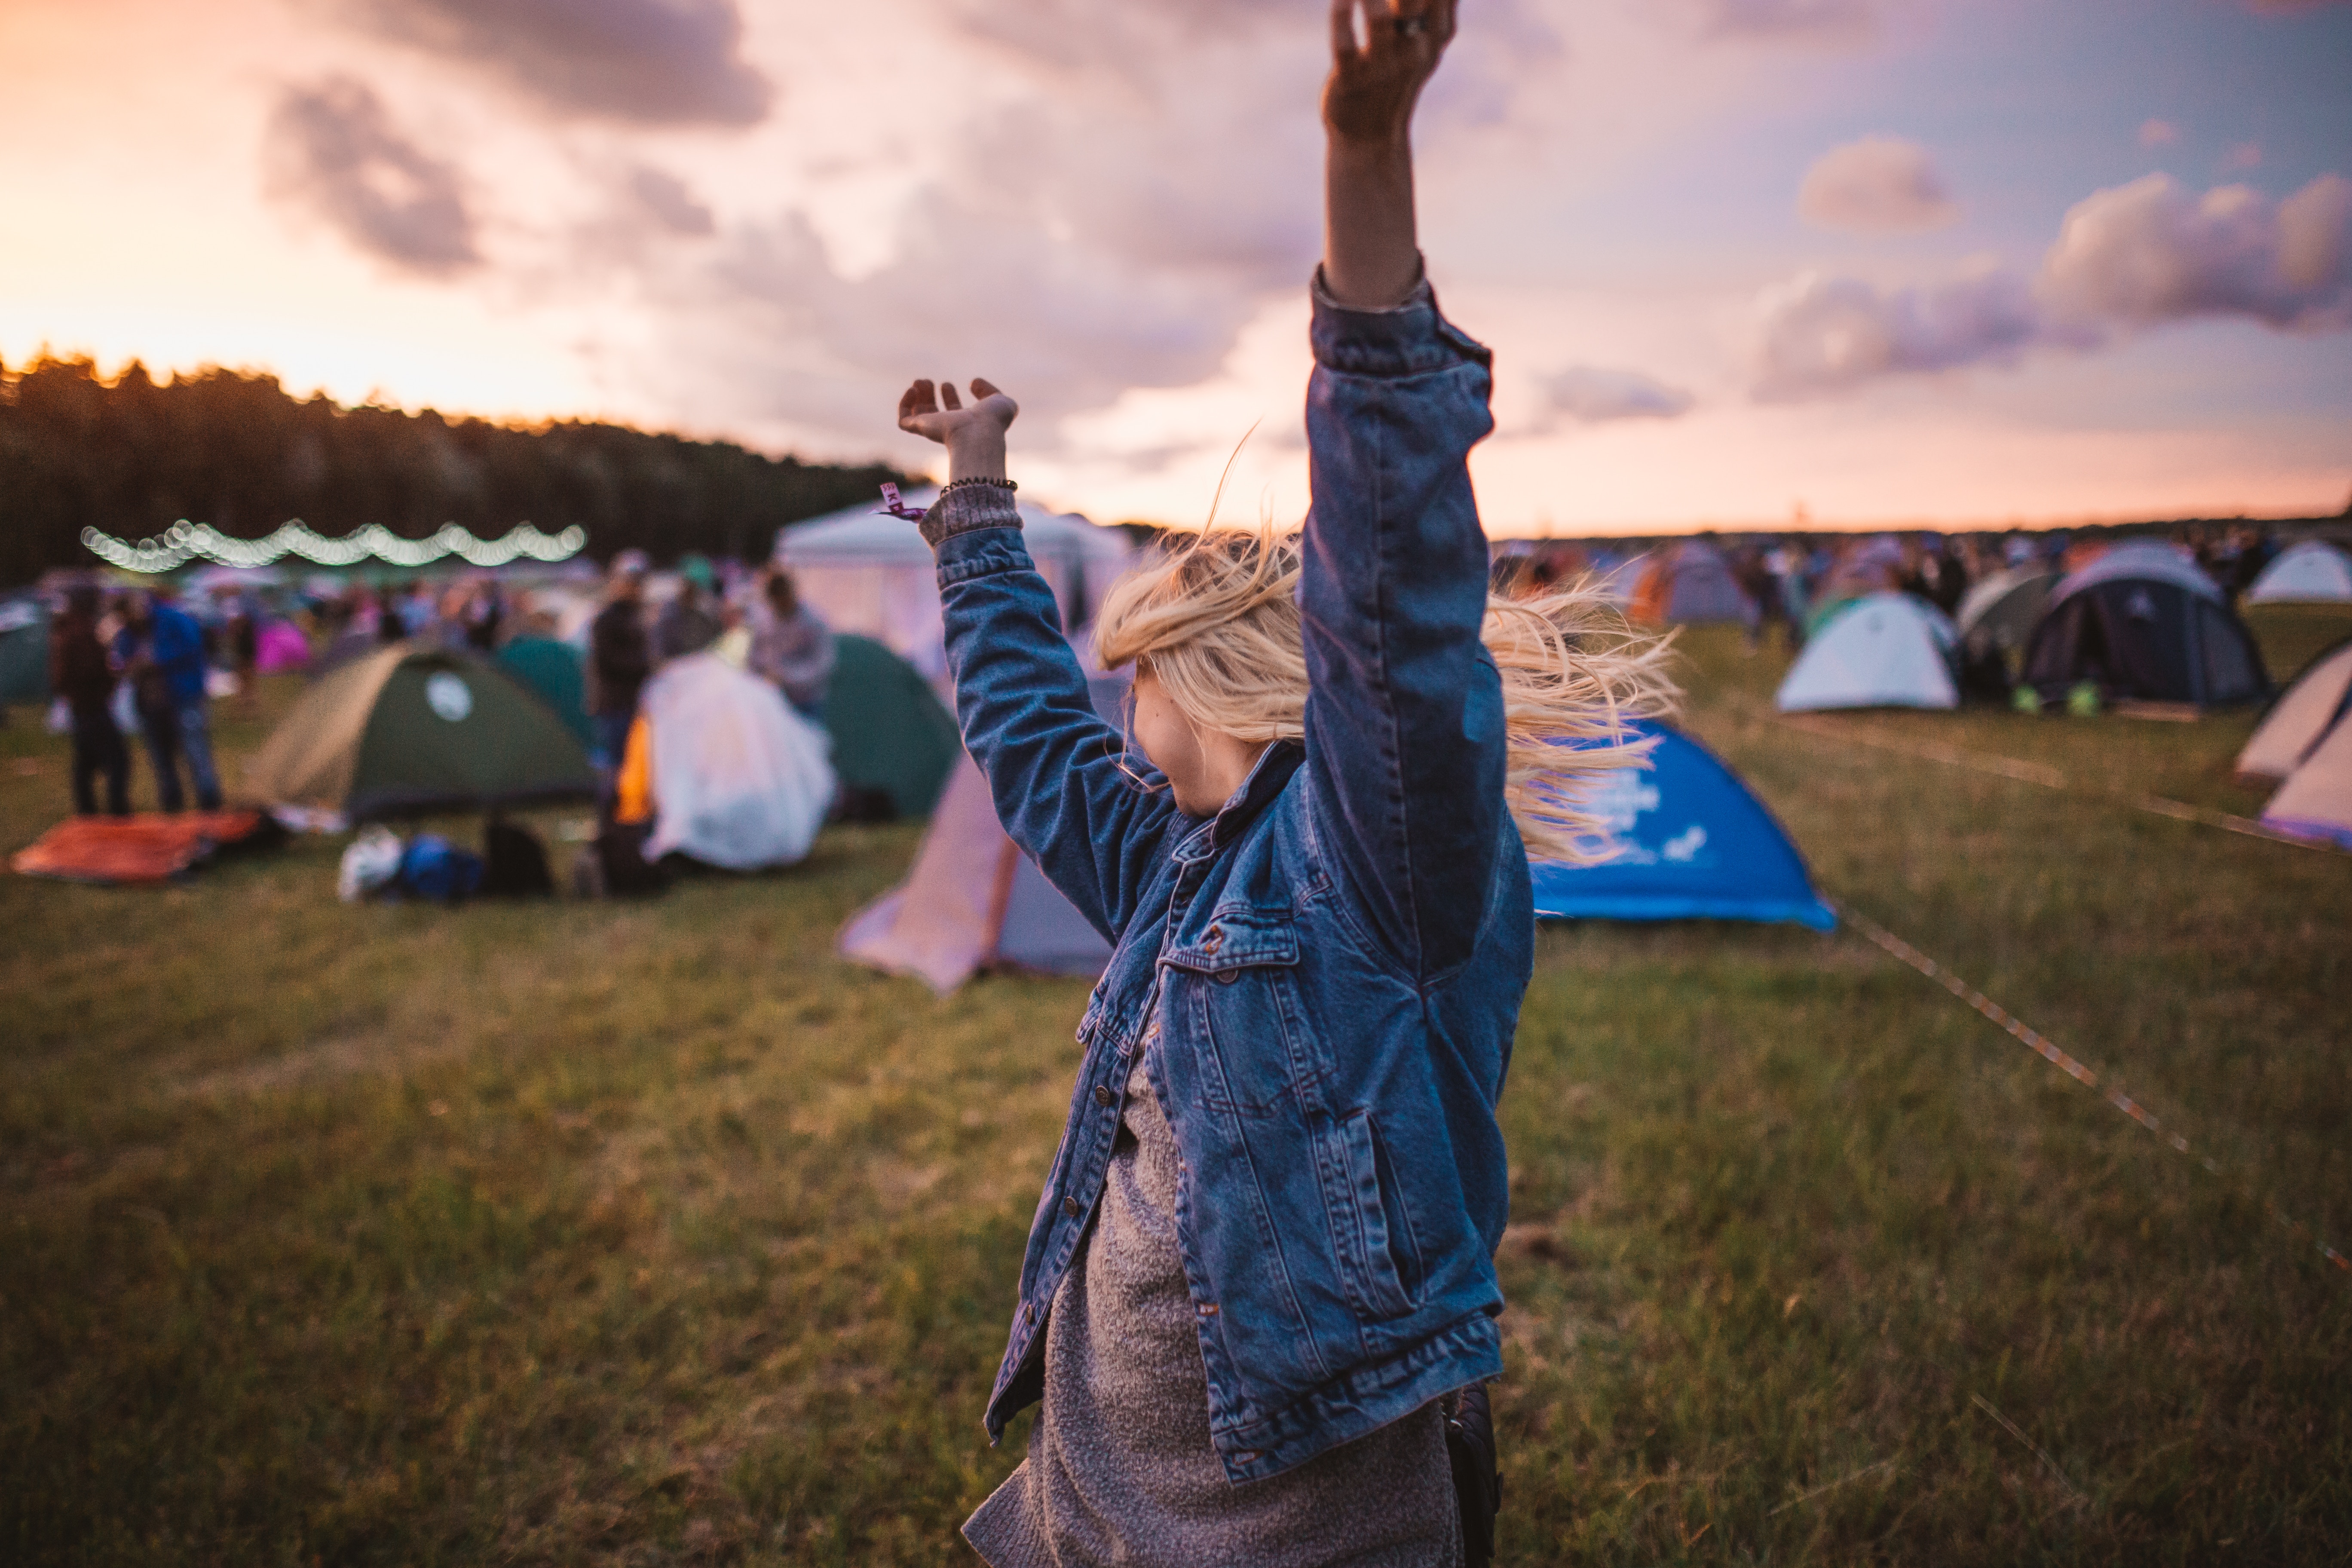 Von wegen Zelt auf dem Acker und Dosenbier: Die Festivalkundschaft ist anspruchsvoll geworden